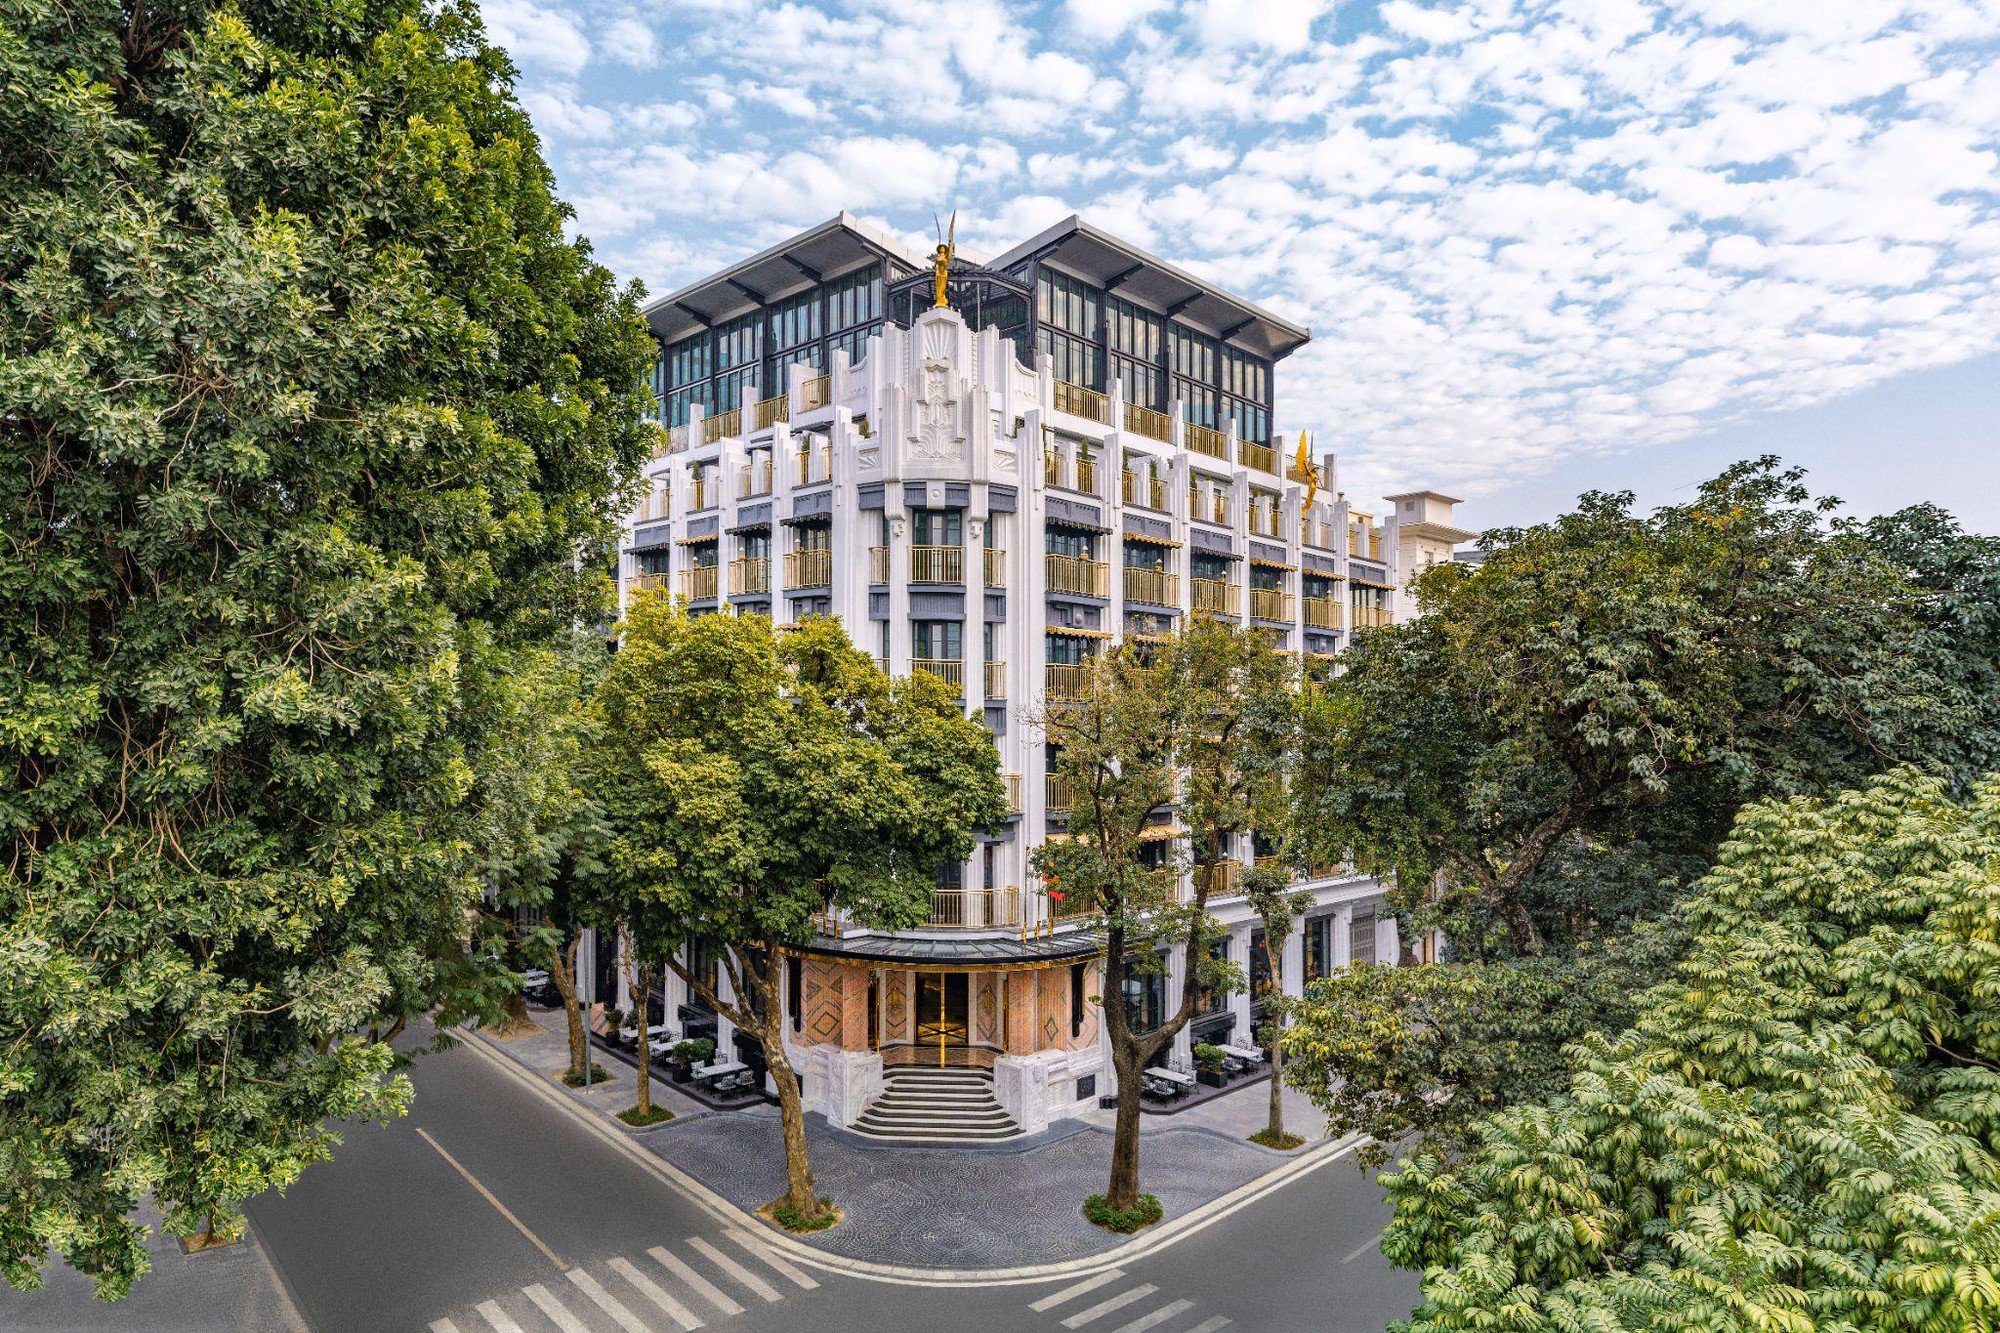 DestinAsian vinh danh Capella Hanoi của Sun Group là khách sạn trong thành phố tốt nhất Việt Nam - Ảnh 1.